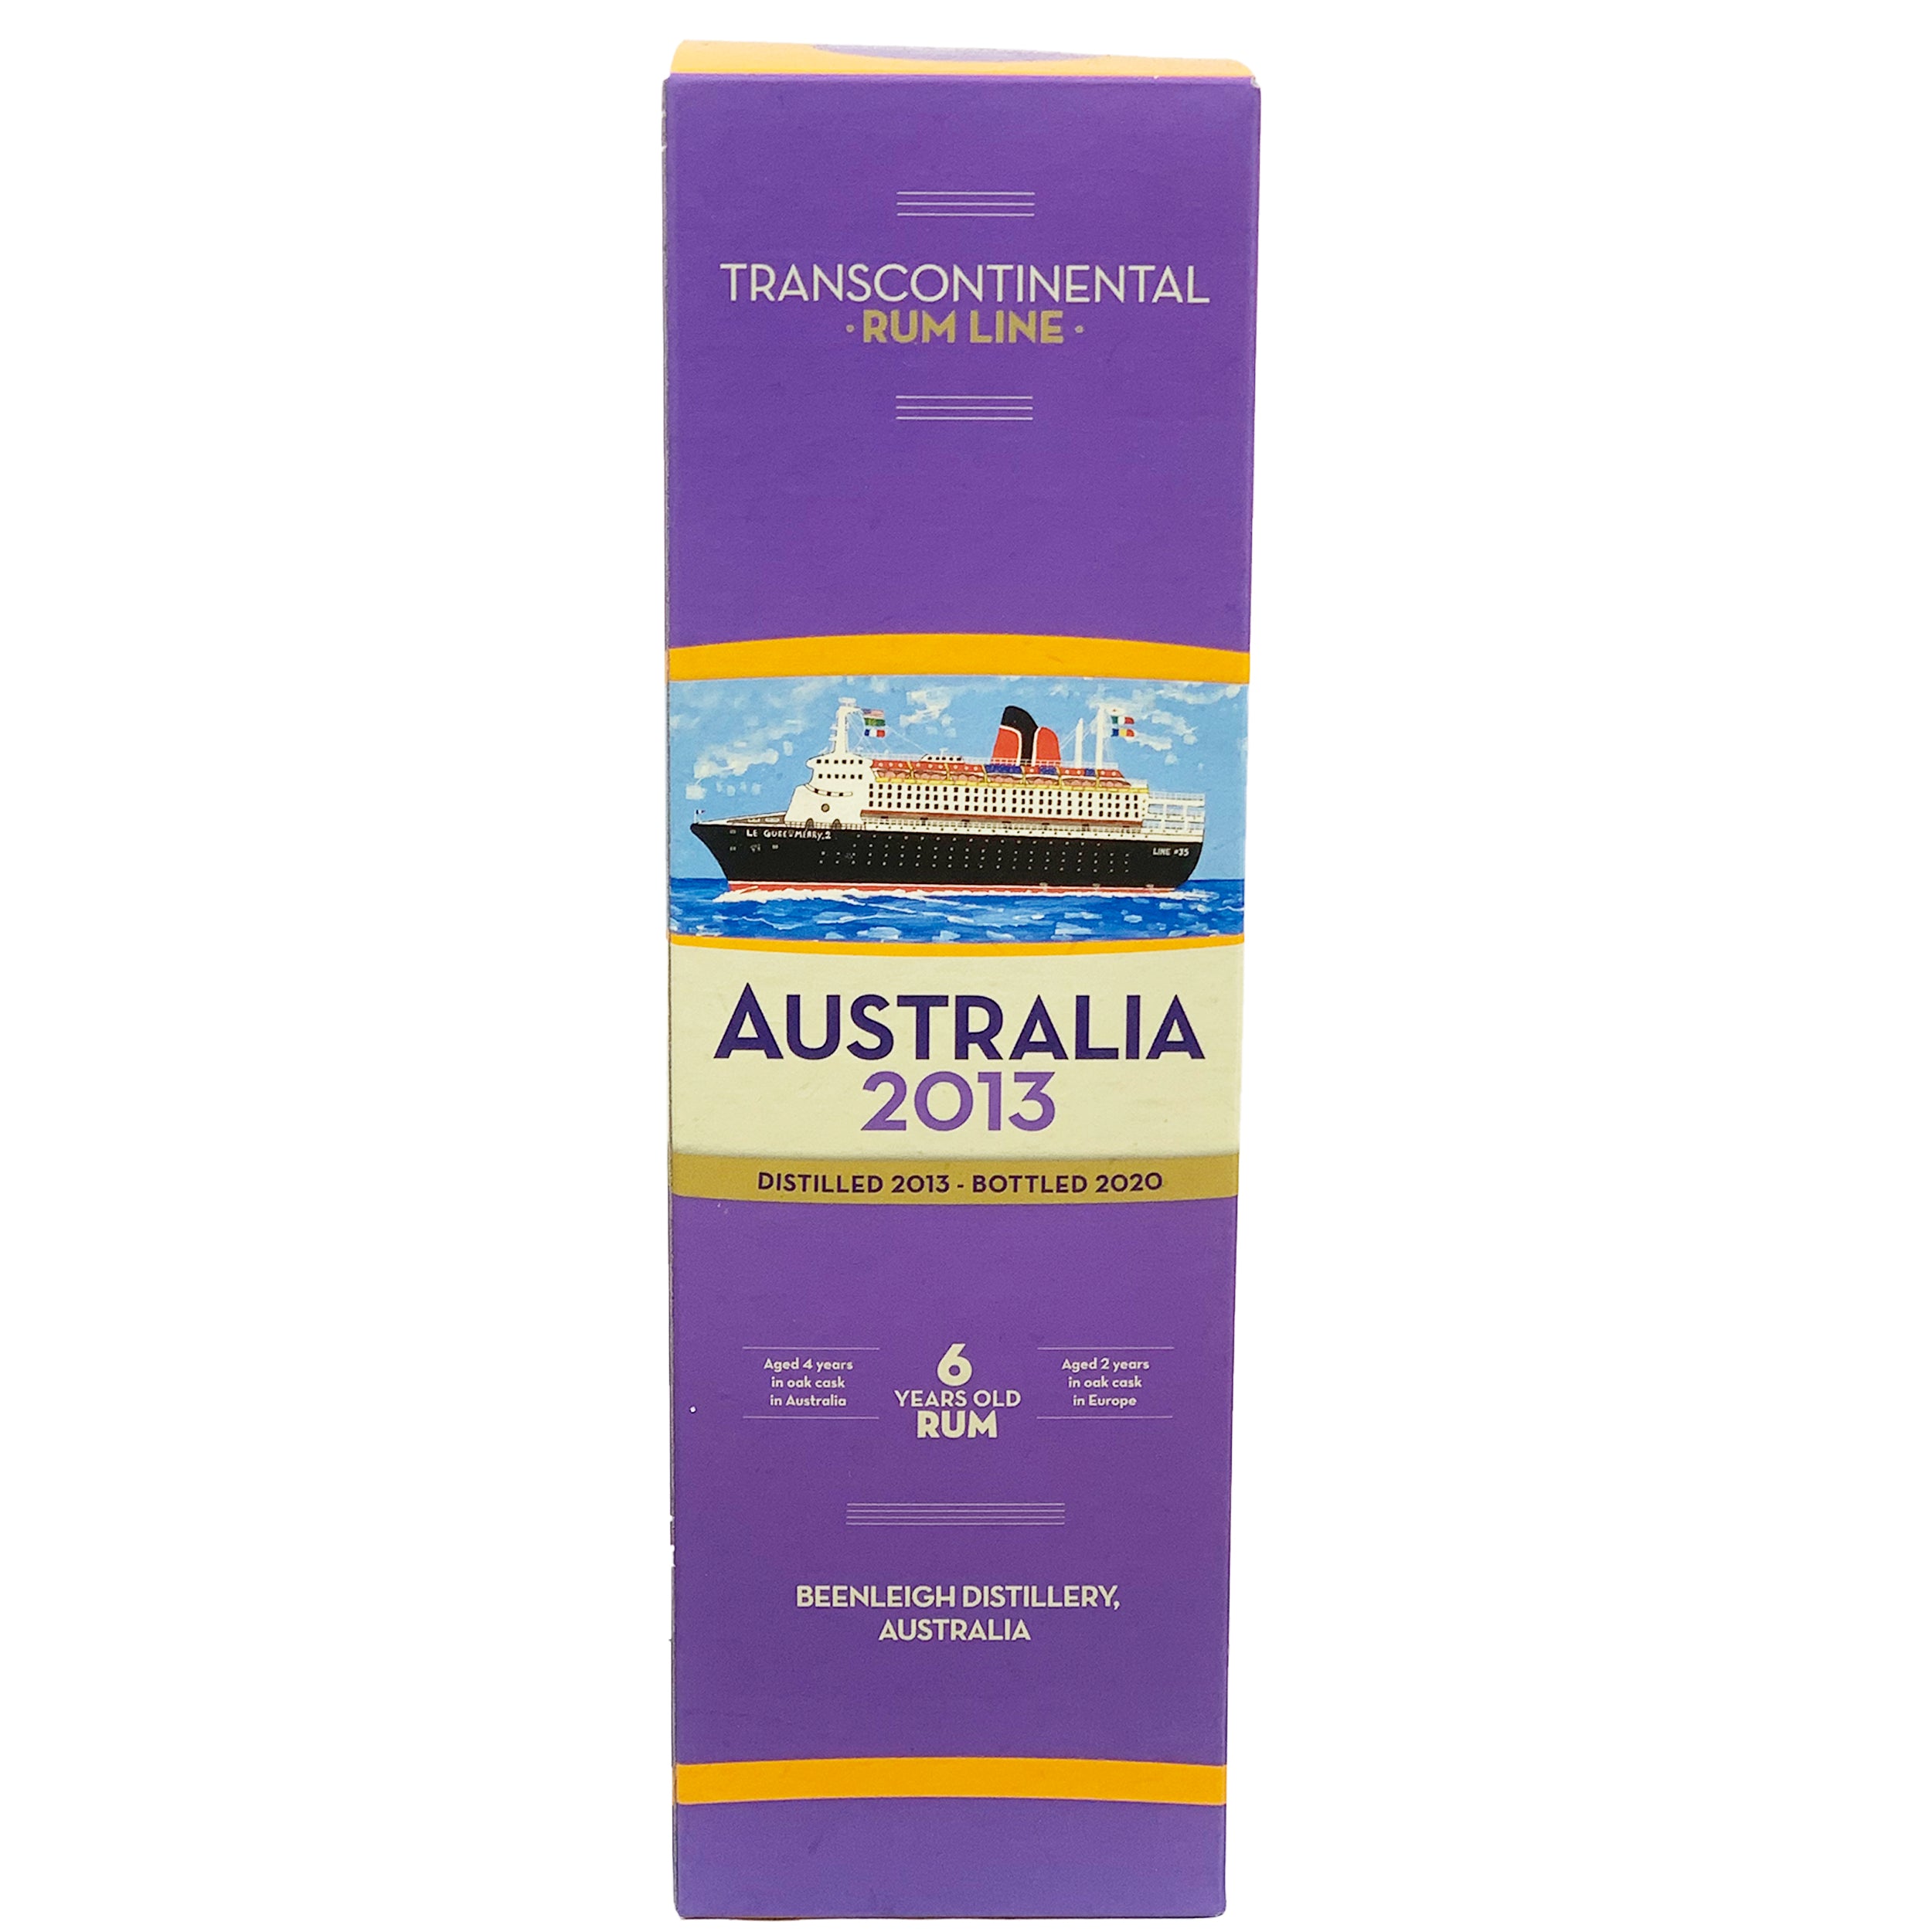 Transcontinental Australia 2013 Rum